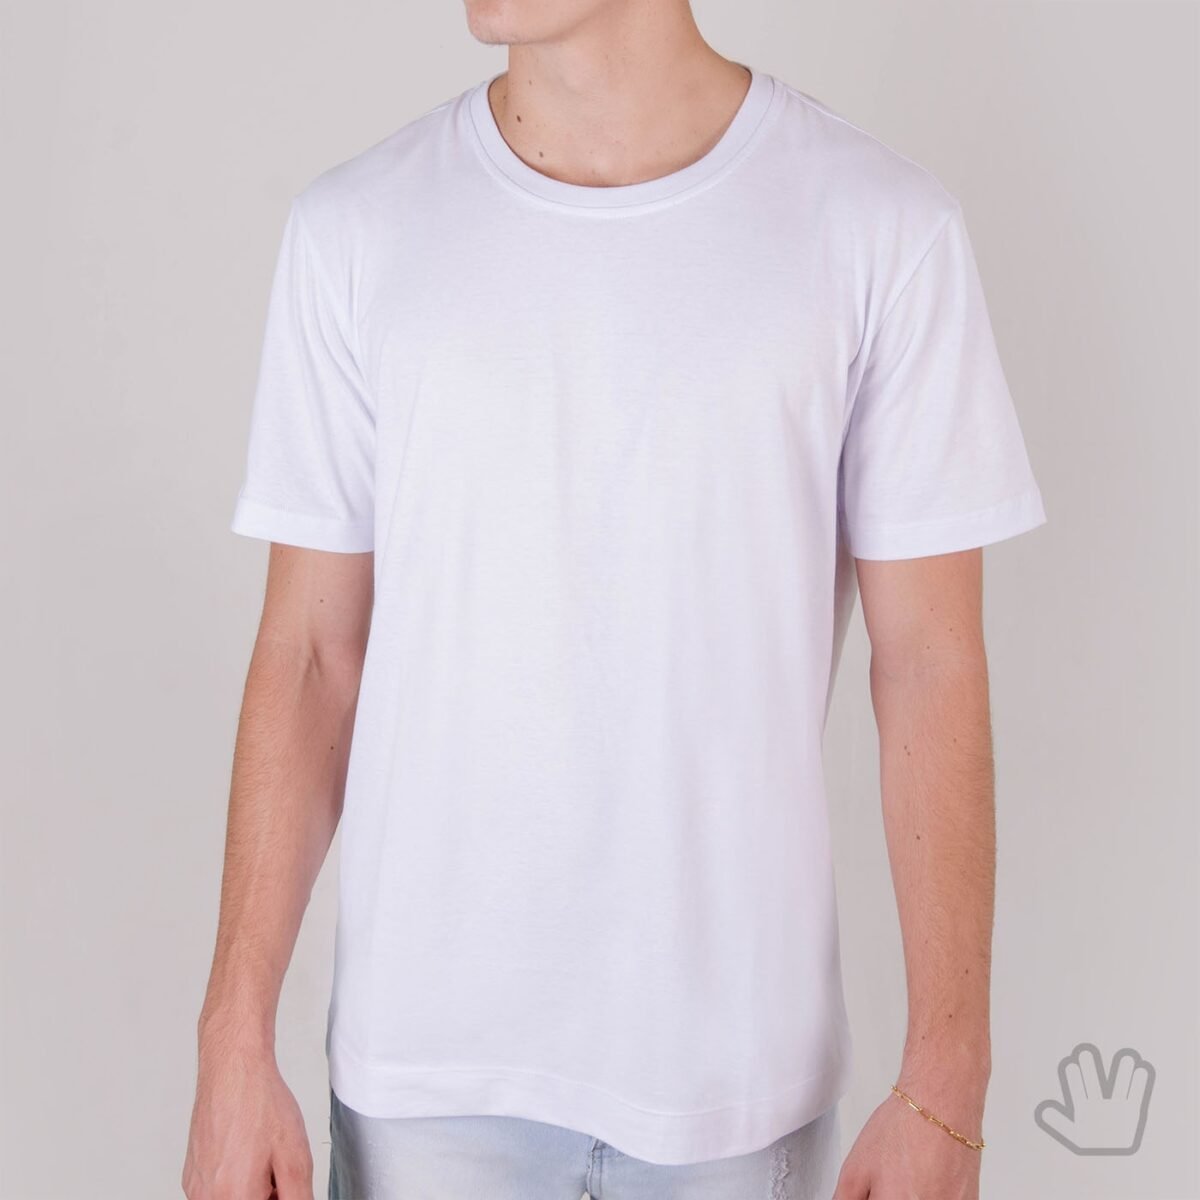 Camiseta Básica Branca em Algodão Premium - Loja Nerd